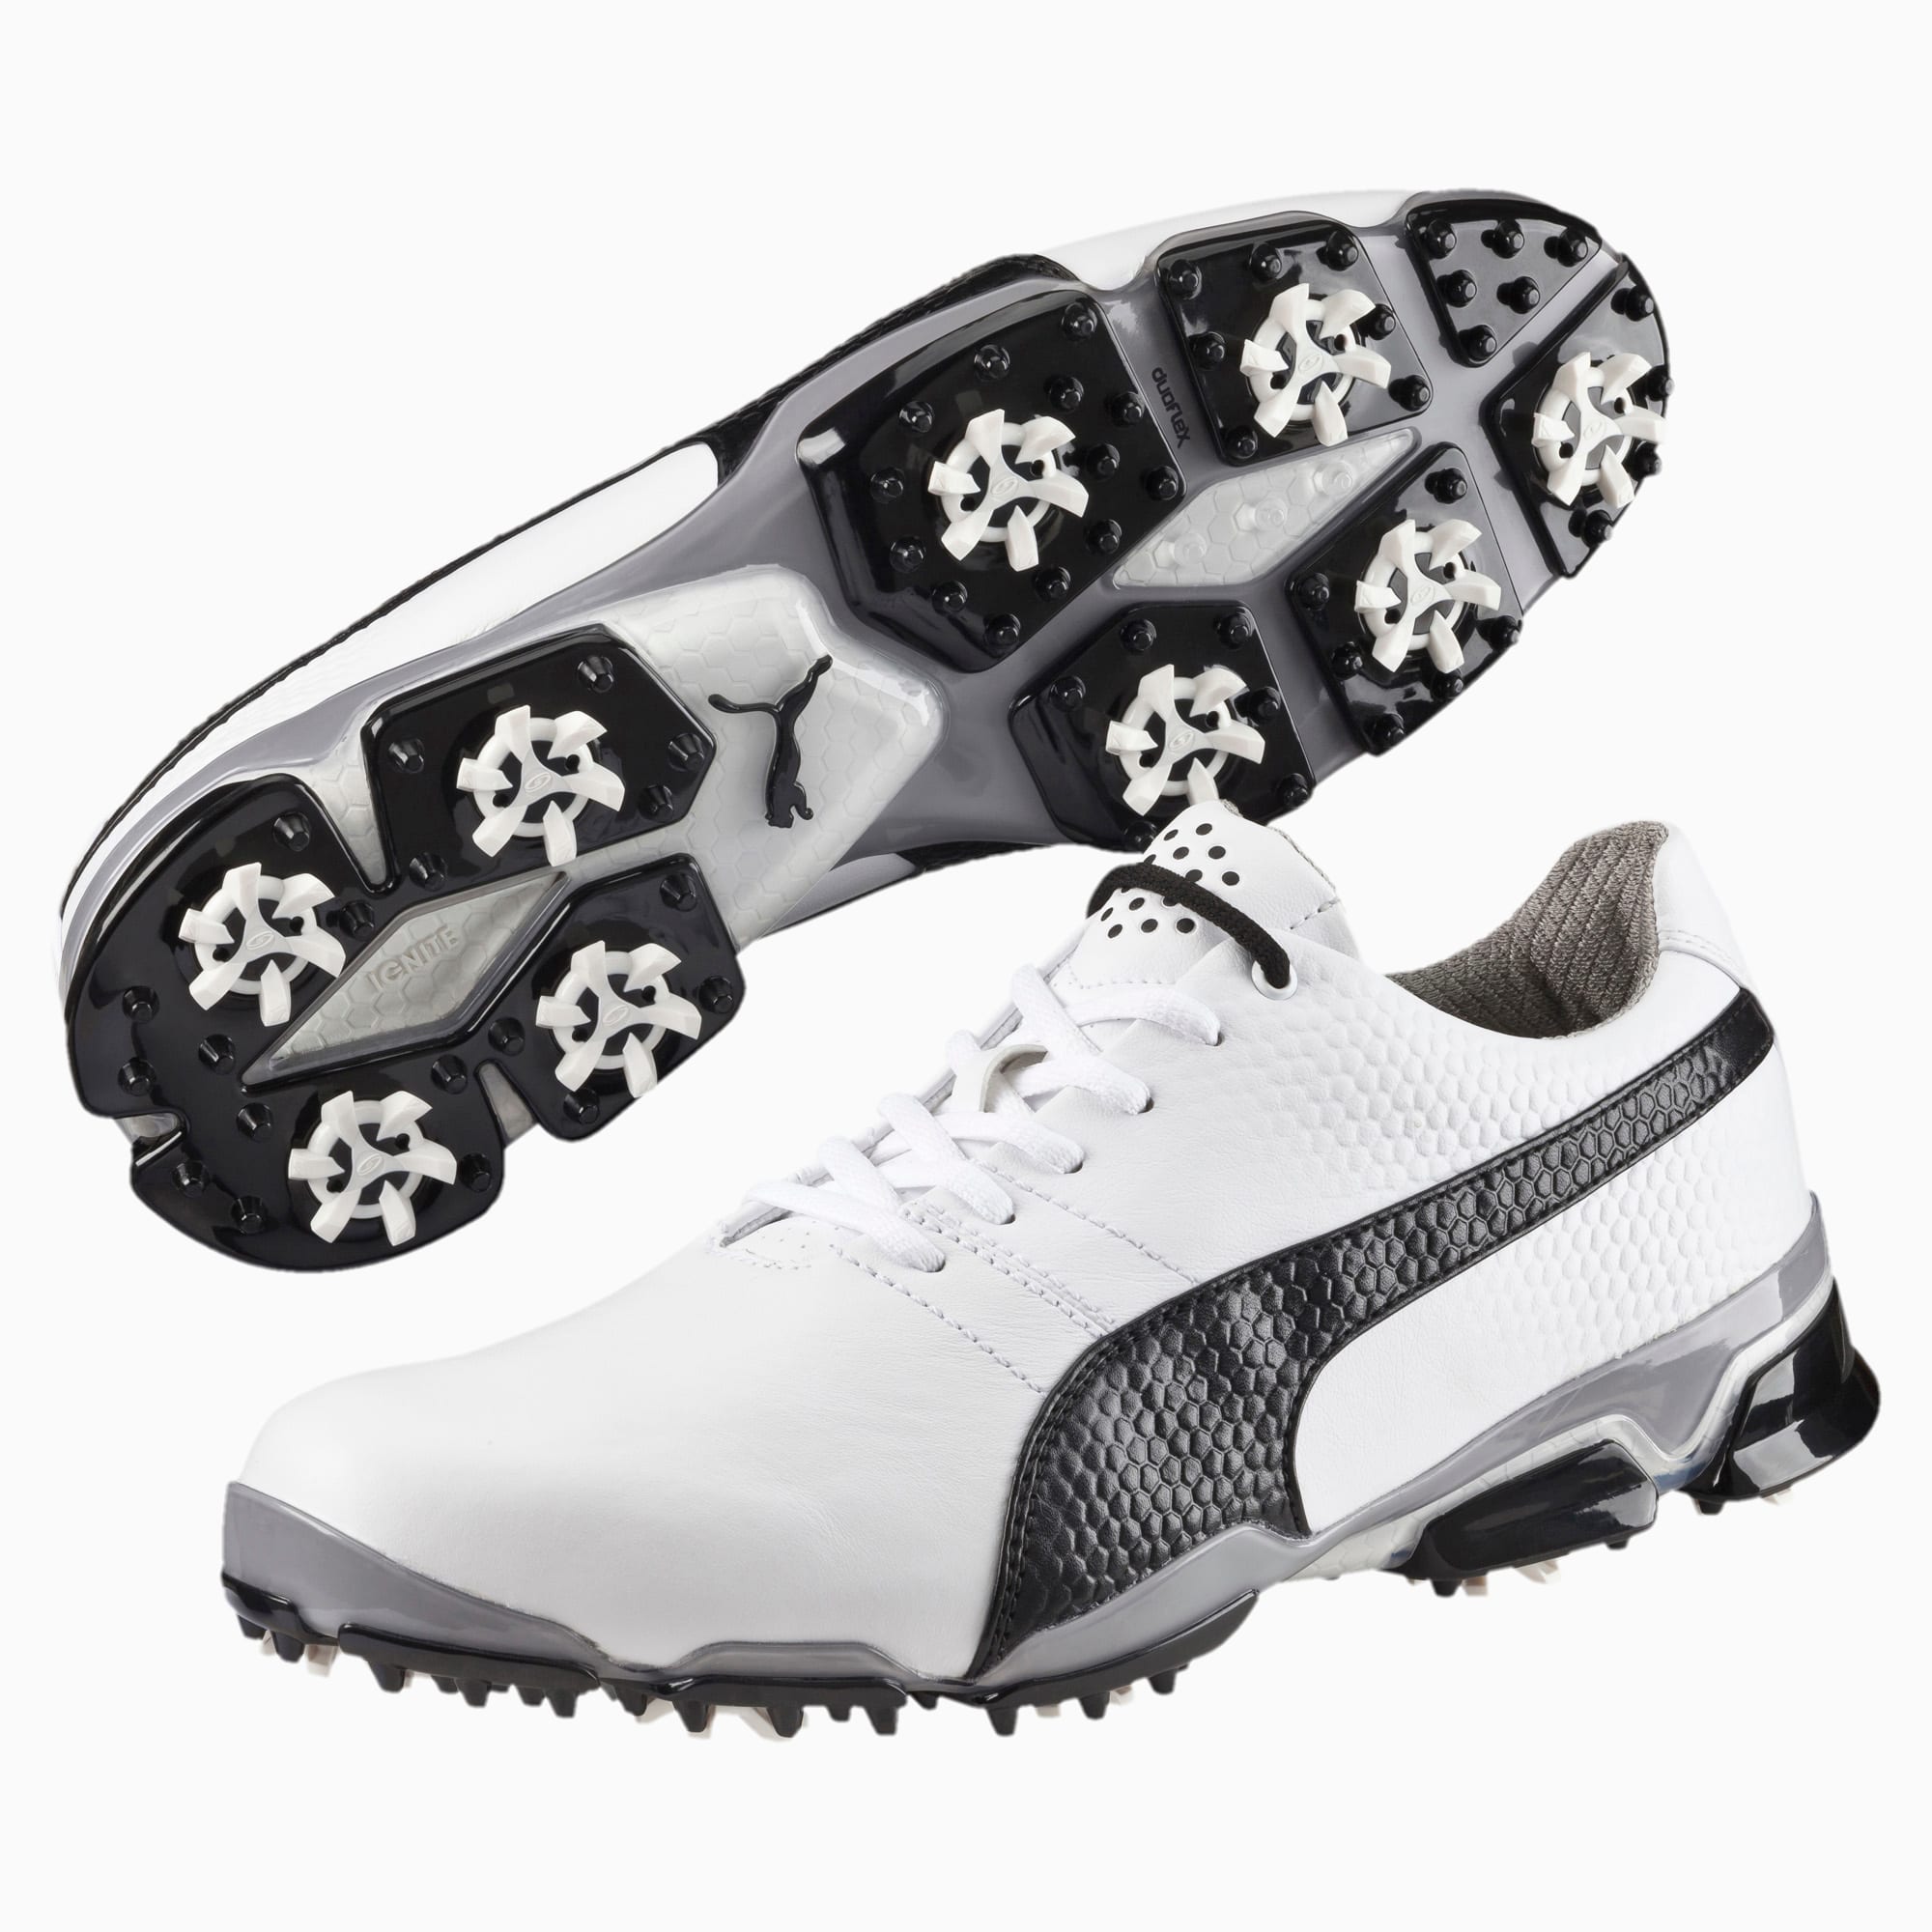 puma men's titantour ignite golf shoes